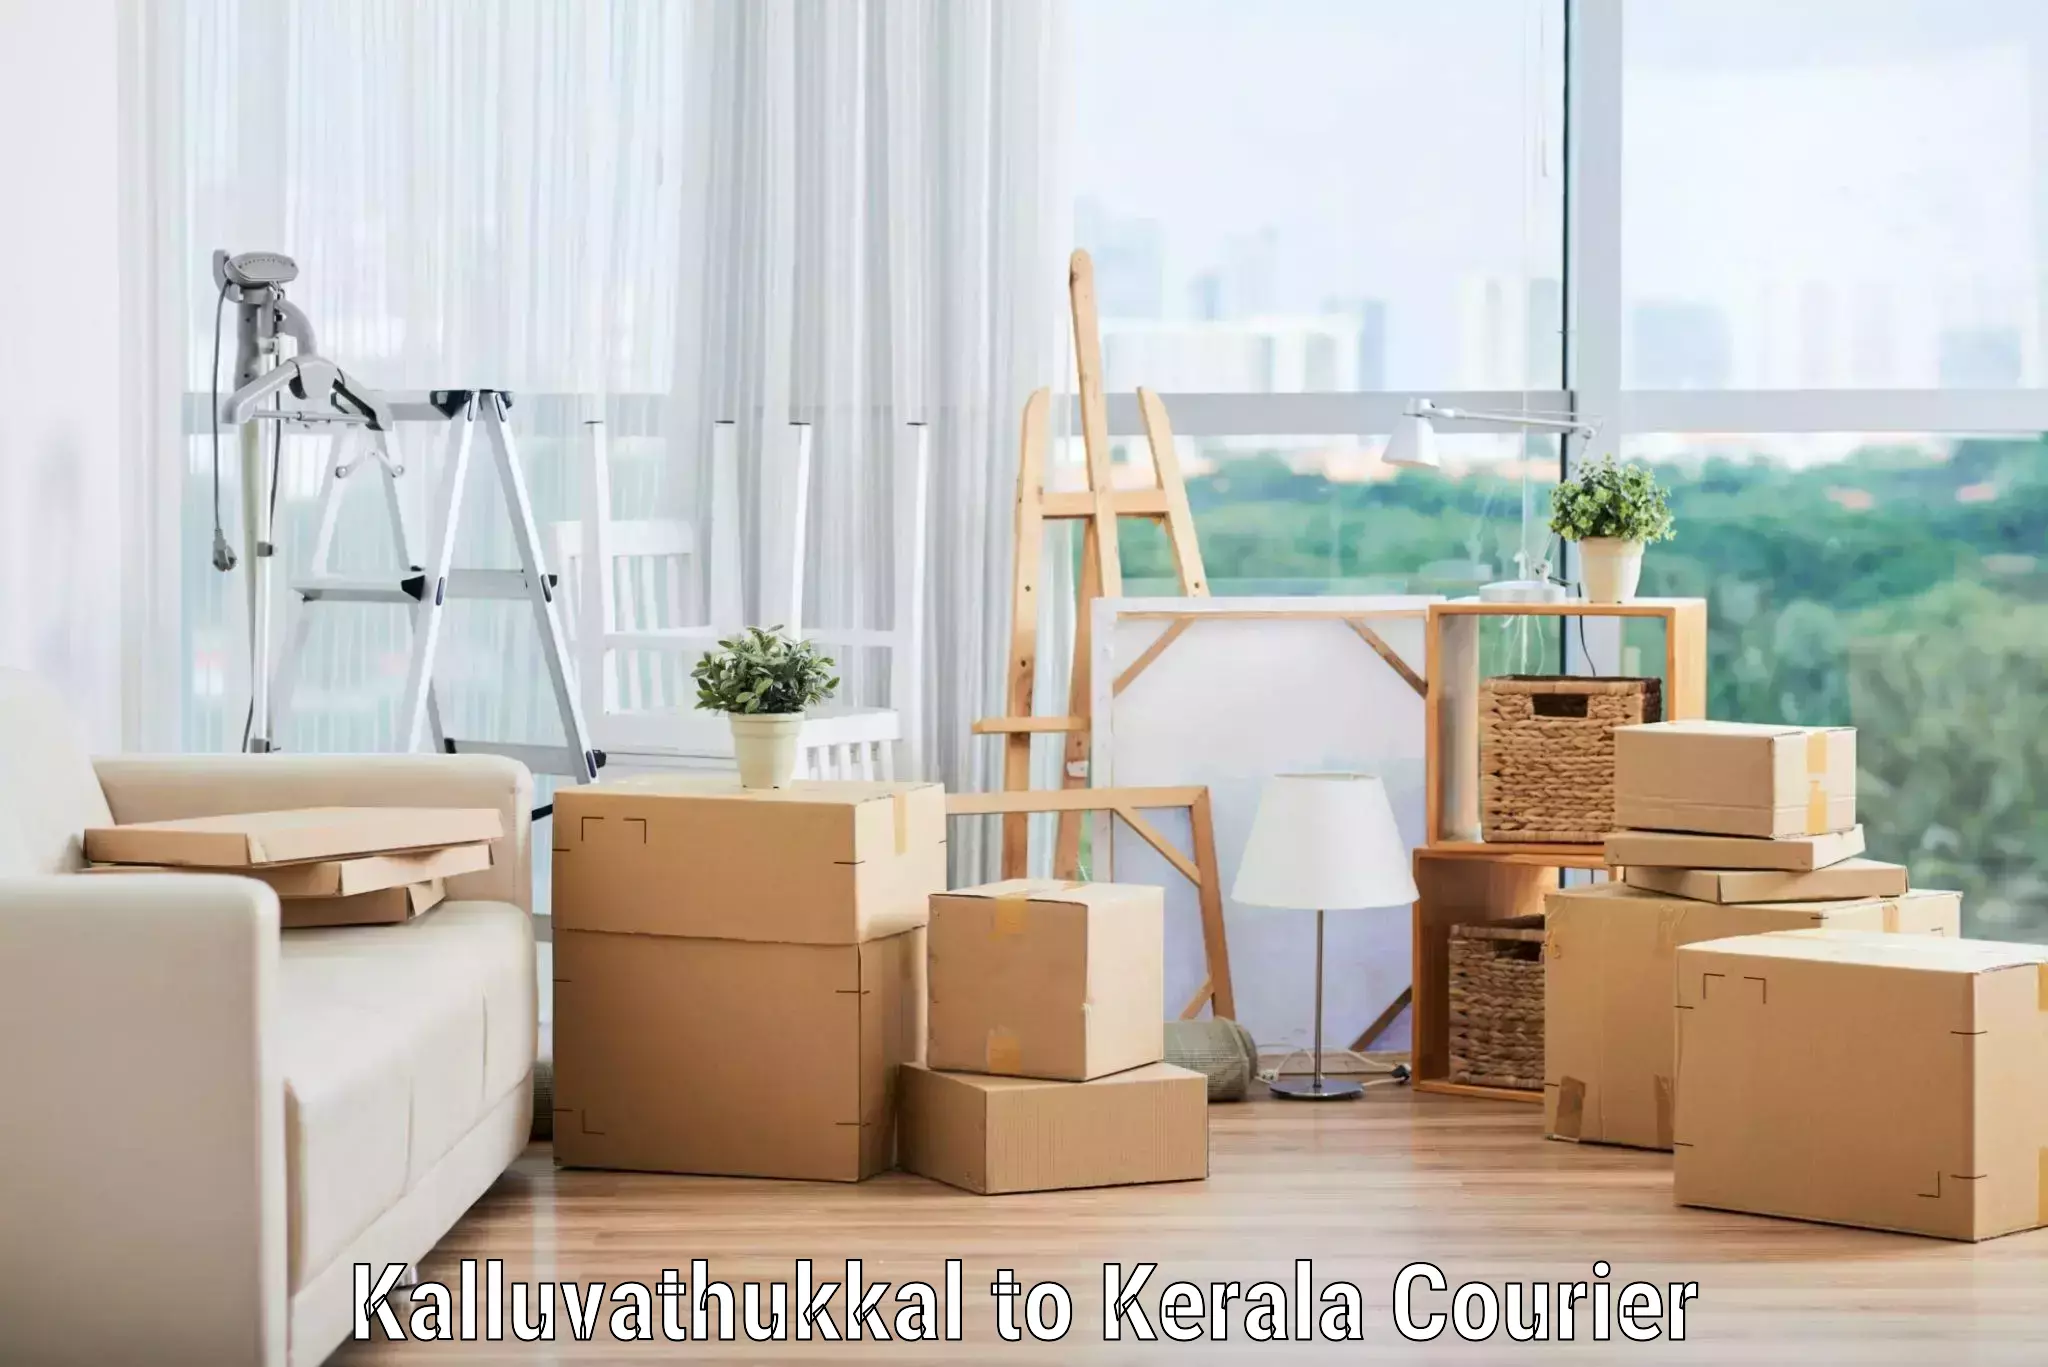 Furniture transport specialists Kalluvathukkal to Kerala